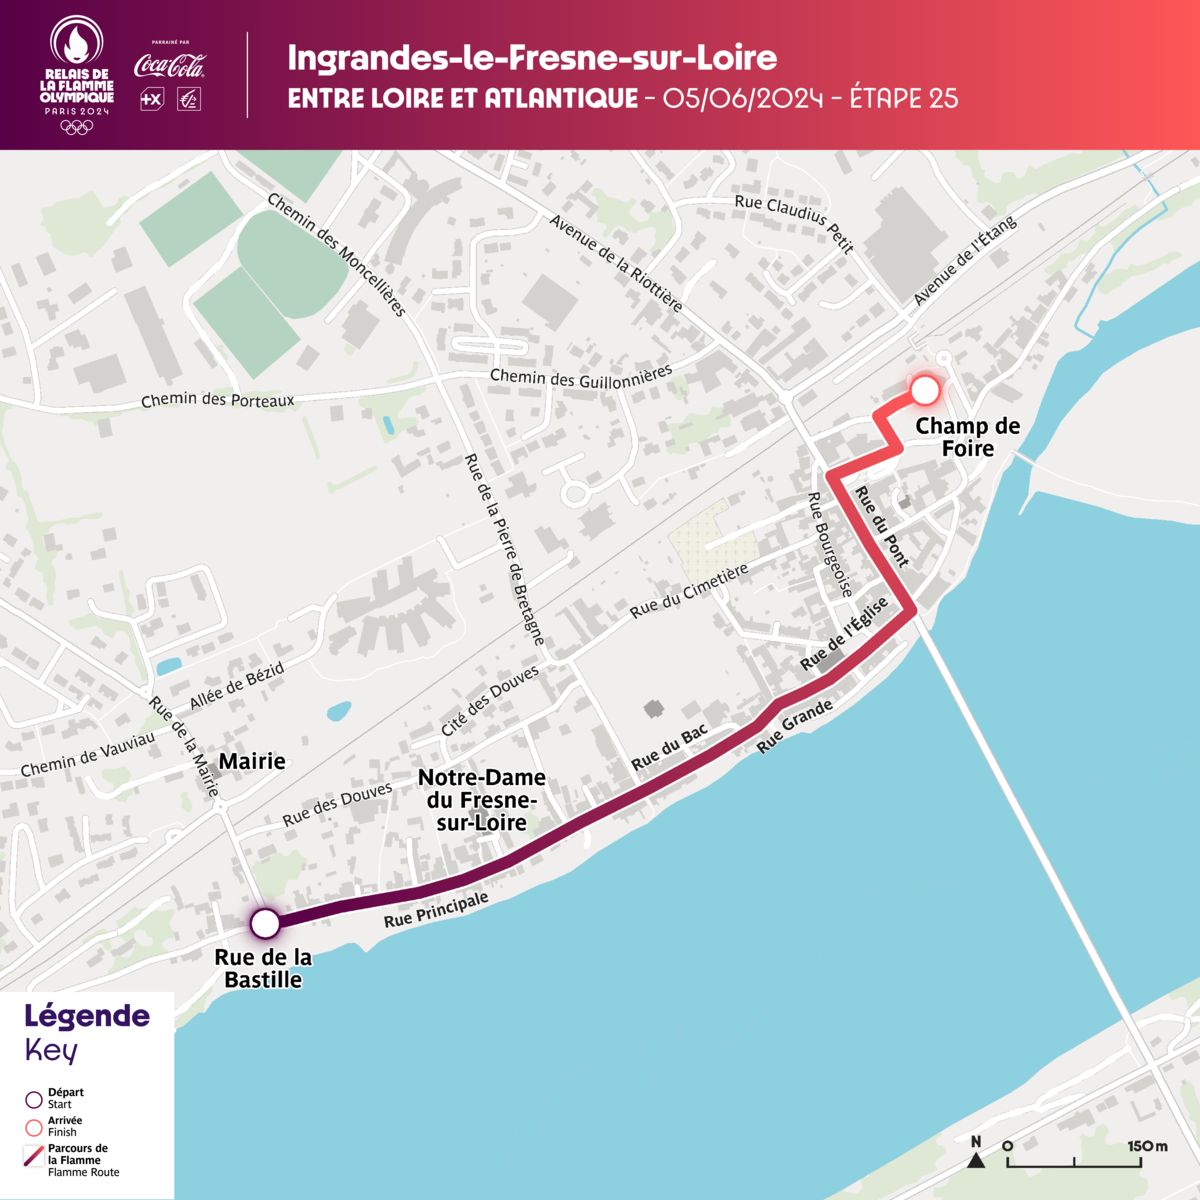 Plan du Parcours de la flamme olympique sur Ingrandes-Le Fresne sur Loire